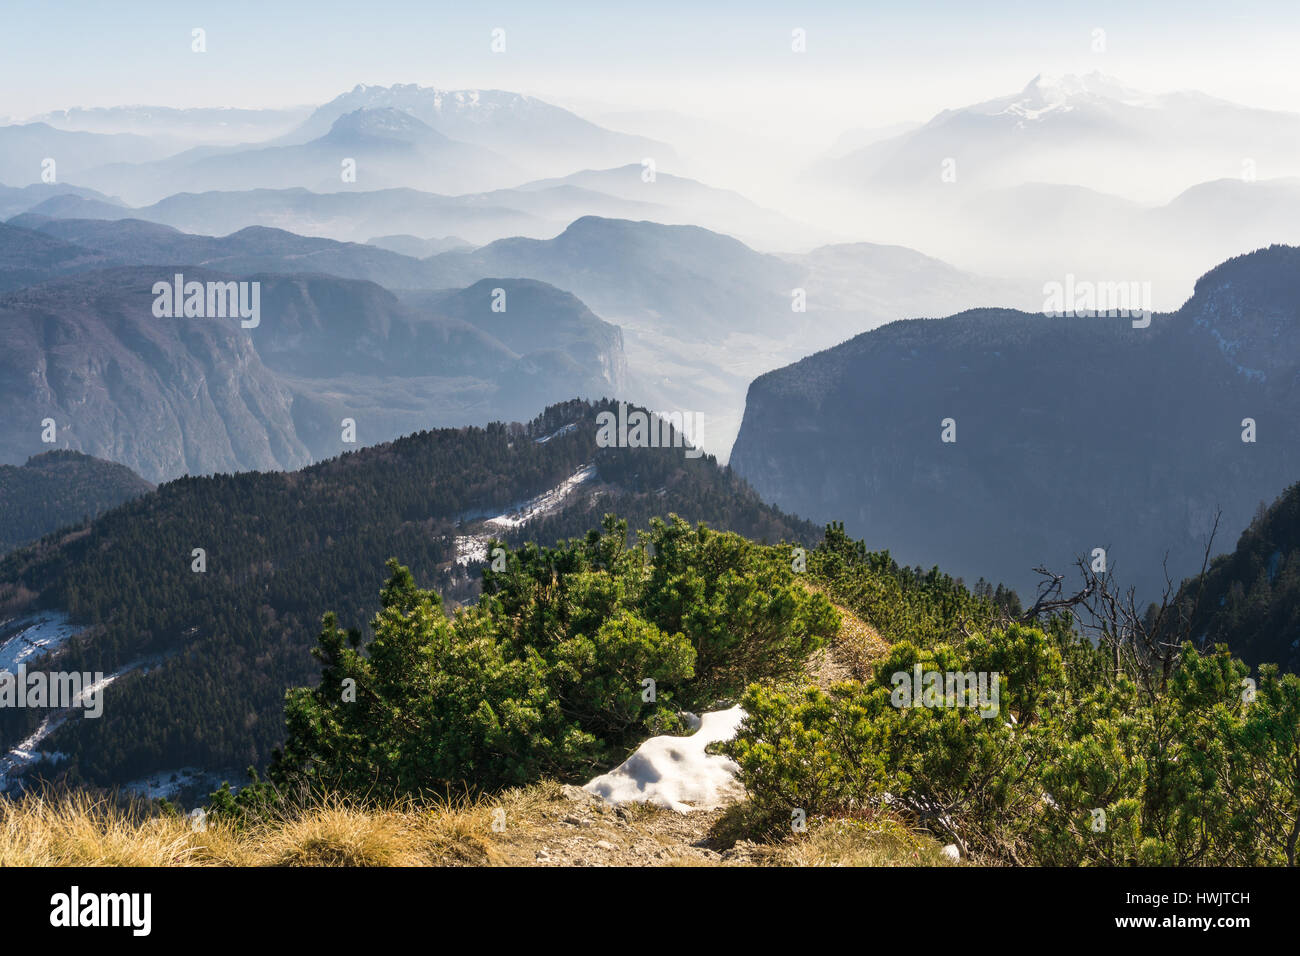 Spektakuläre Aussicht auf die Berge Silhouetten und Nebel in den Tälern. Stockfoto